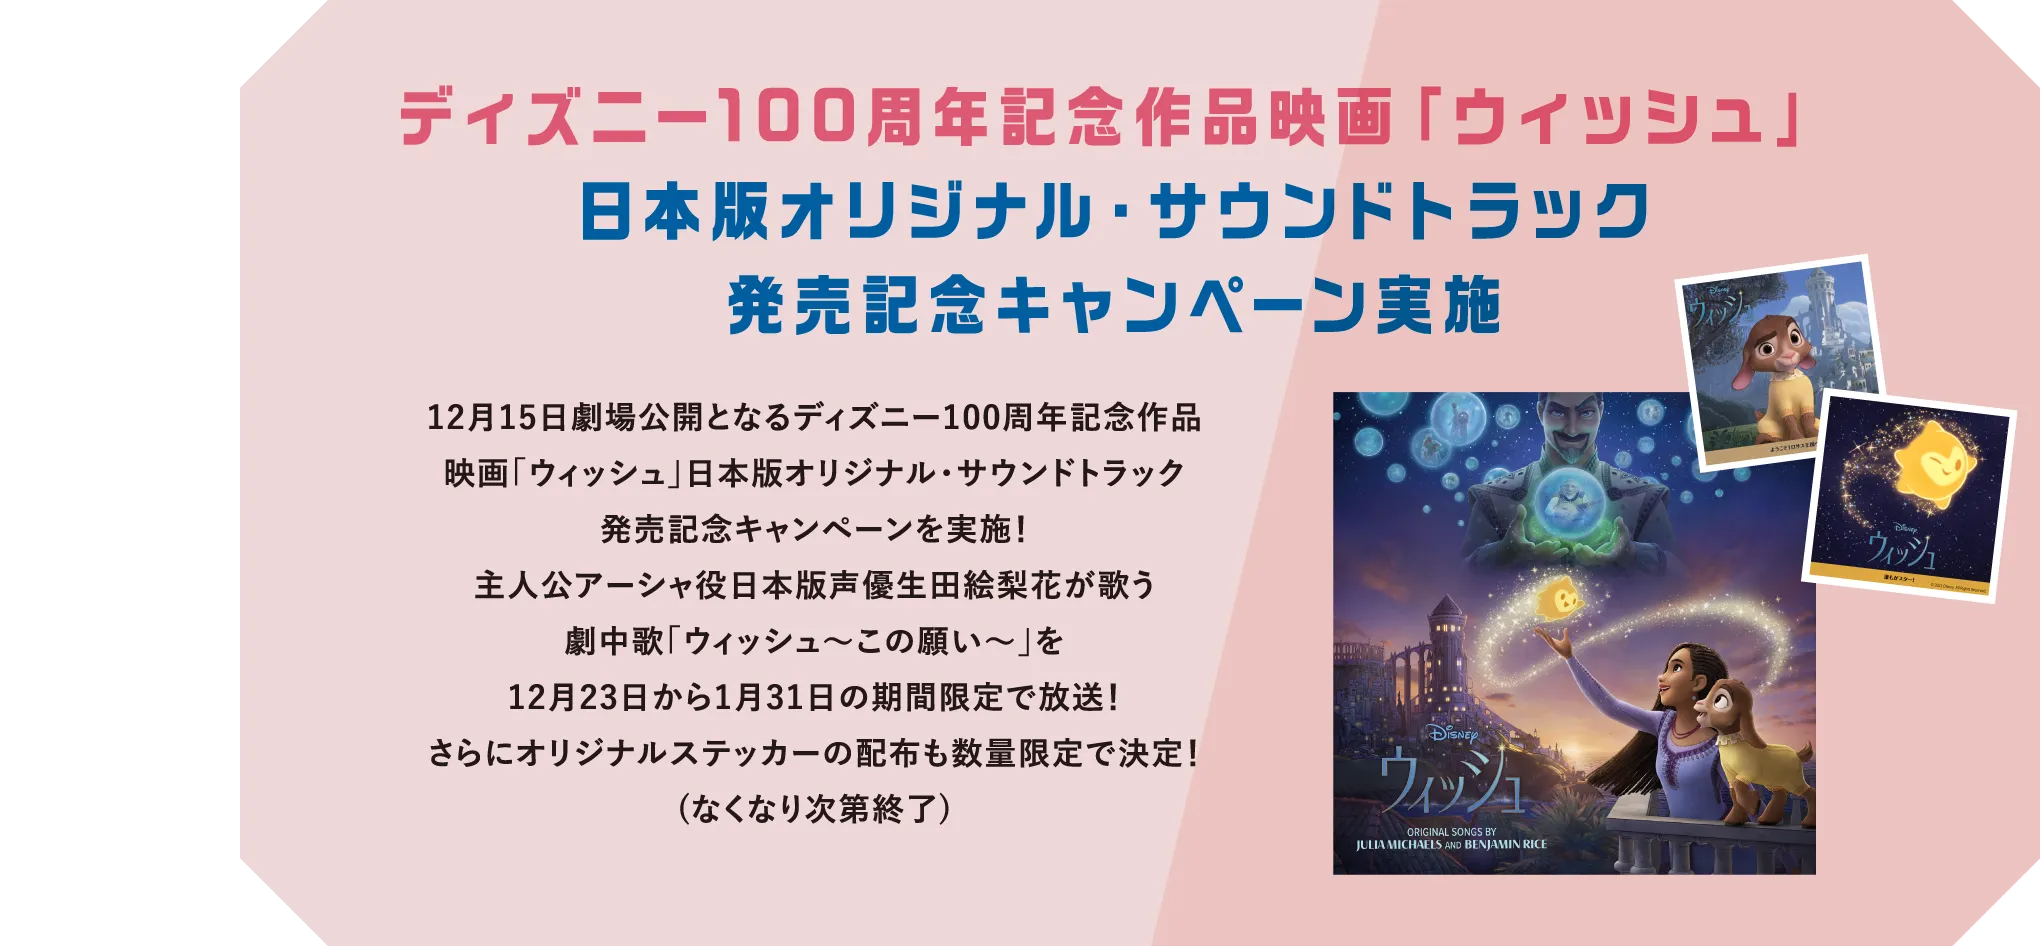 ディズニー100周年記念作品映画「ウィッシュ」日本版オリジナル・サウンドトラック発売記念キャンペーン実施